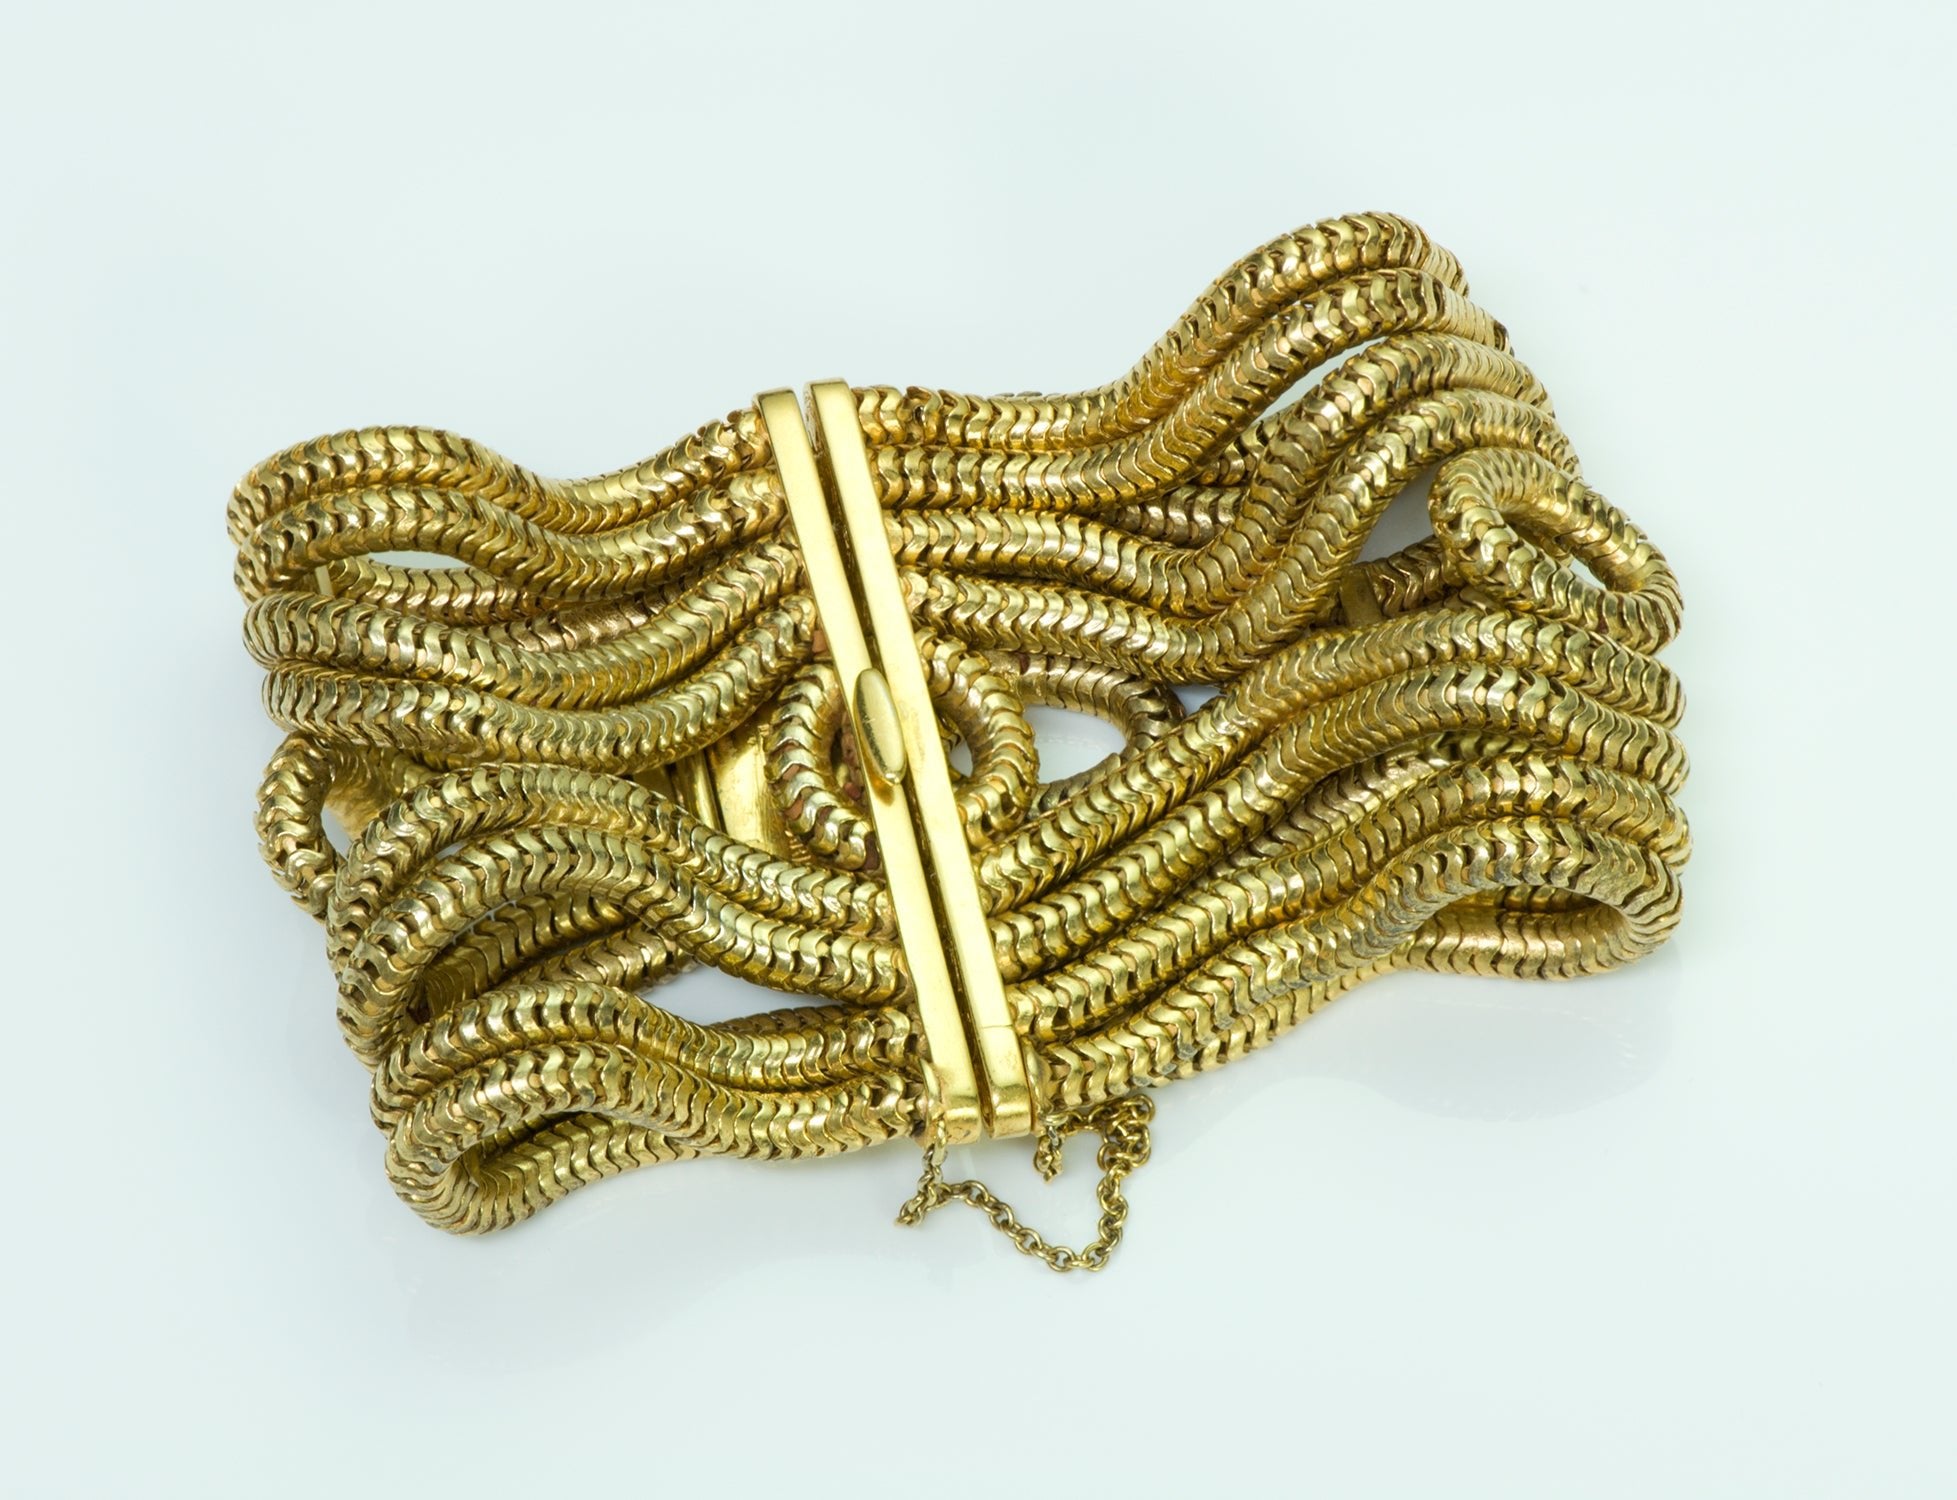 Hermès Gilt Metal Chain Bracelet